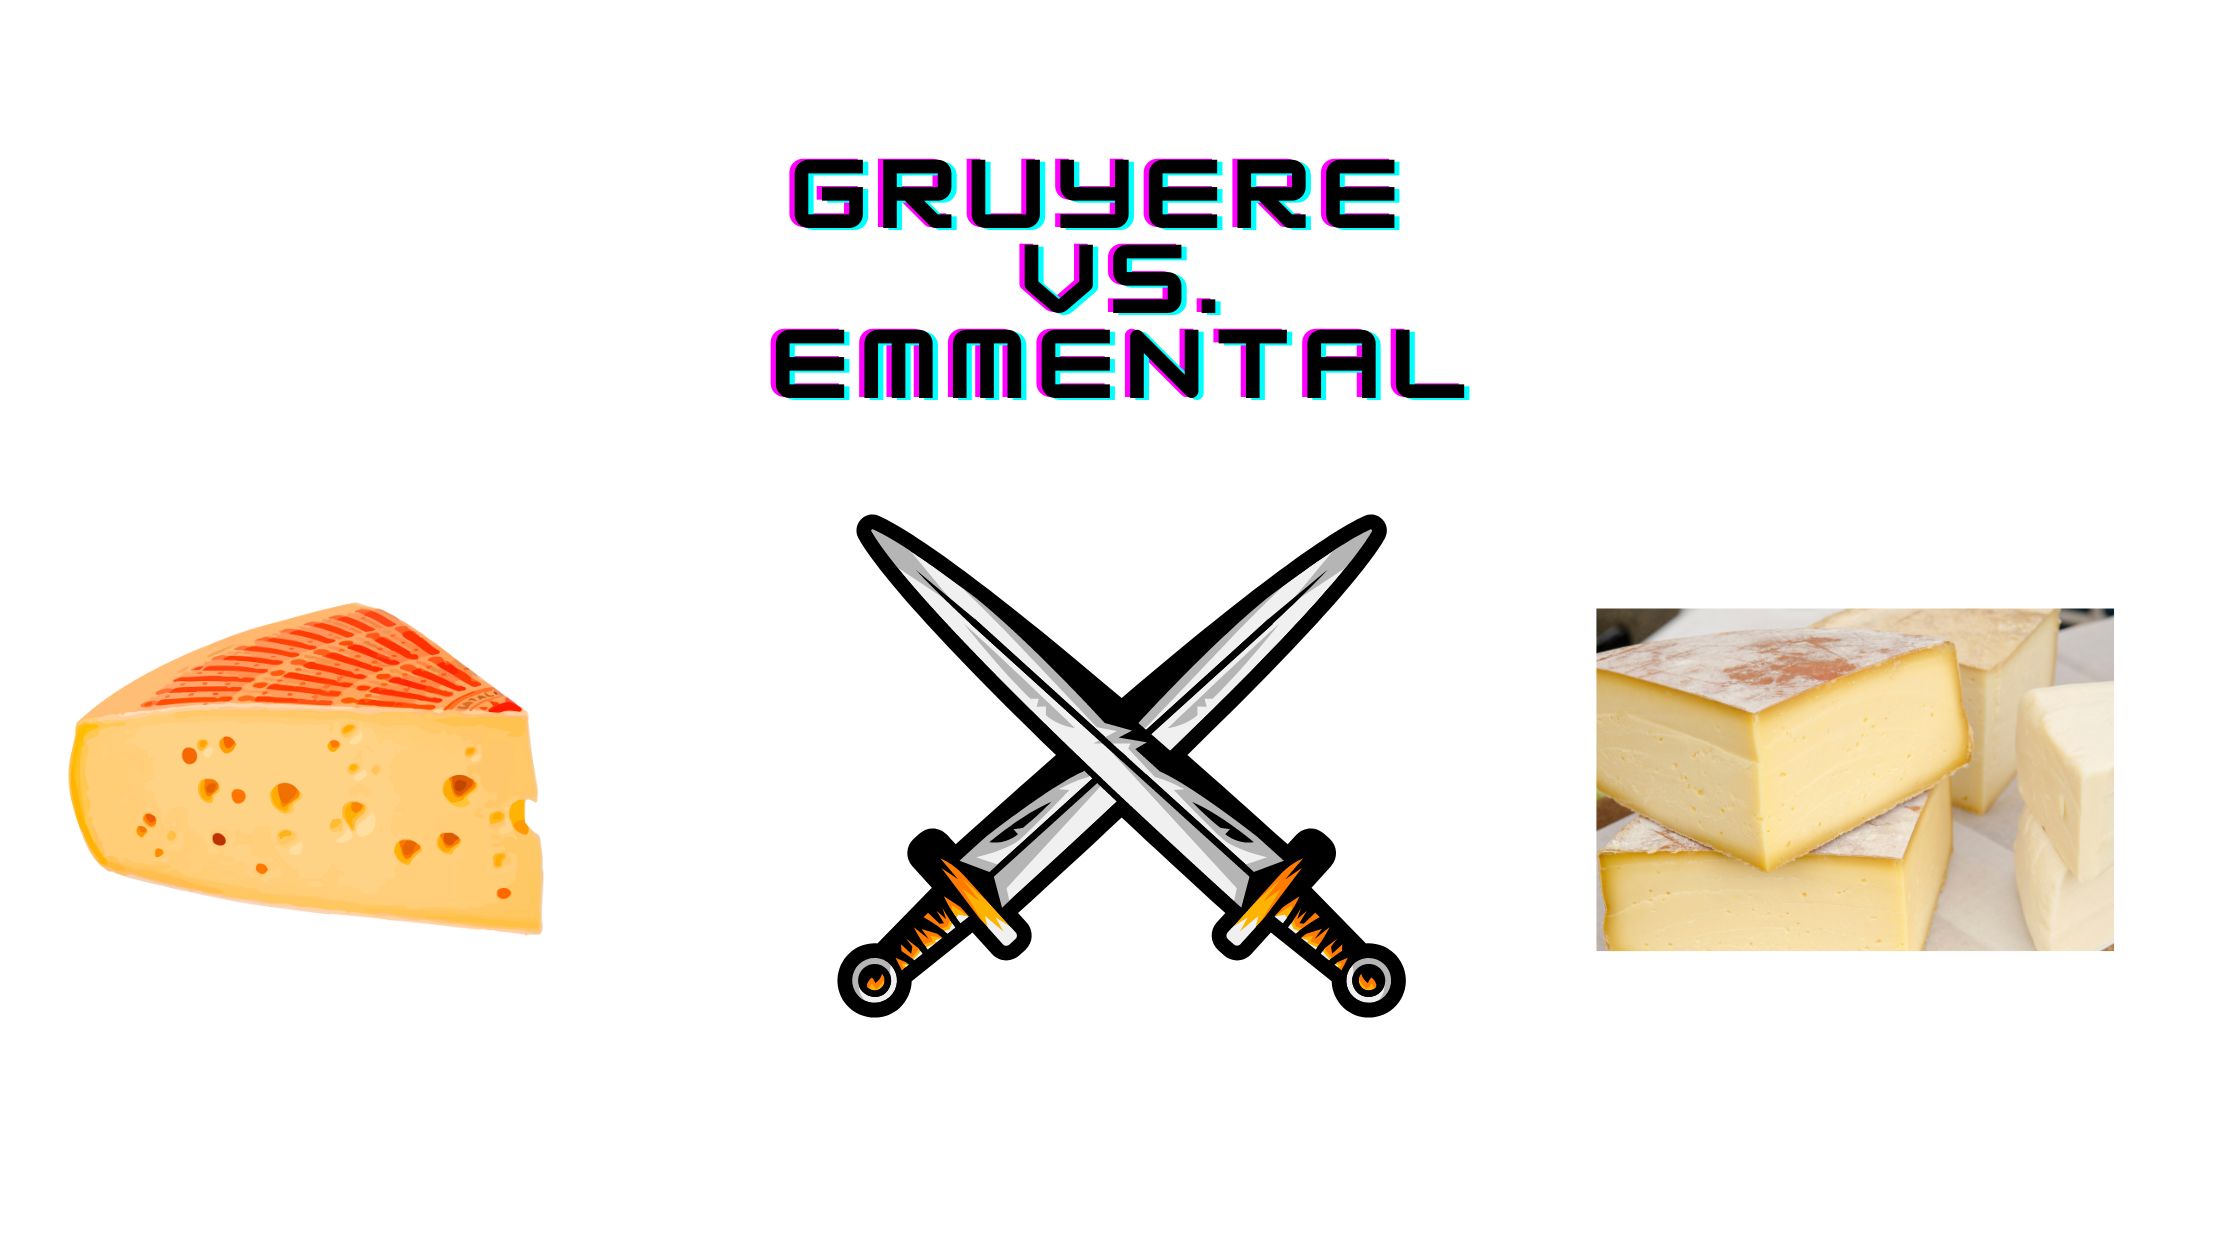 Gruyere vs. Emmental